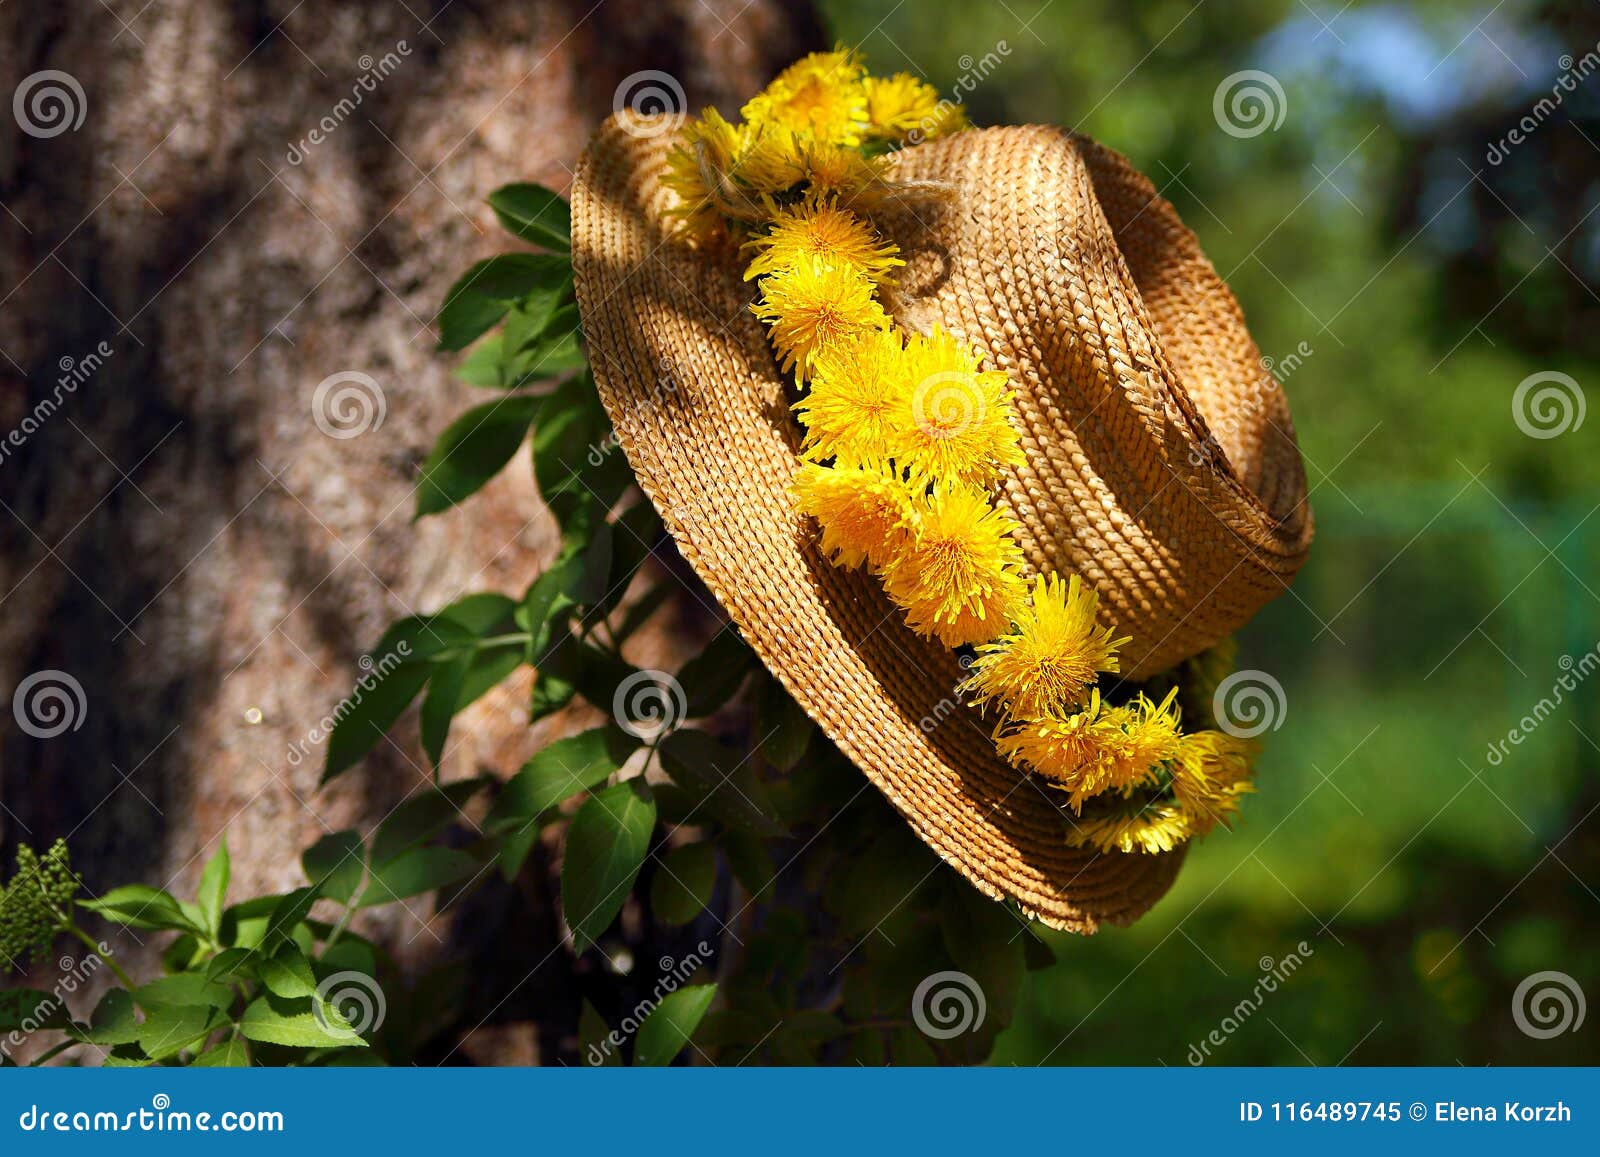 В большой соломенной шляпе расписанной чудесными цветами. Головной убор из одуванчиков. Одуванчики венок. Фотосессия в соломенной шляпе в одуванчиках. Соломенная шляпа.